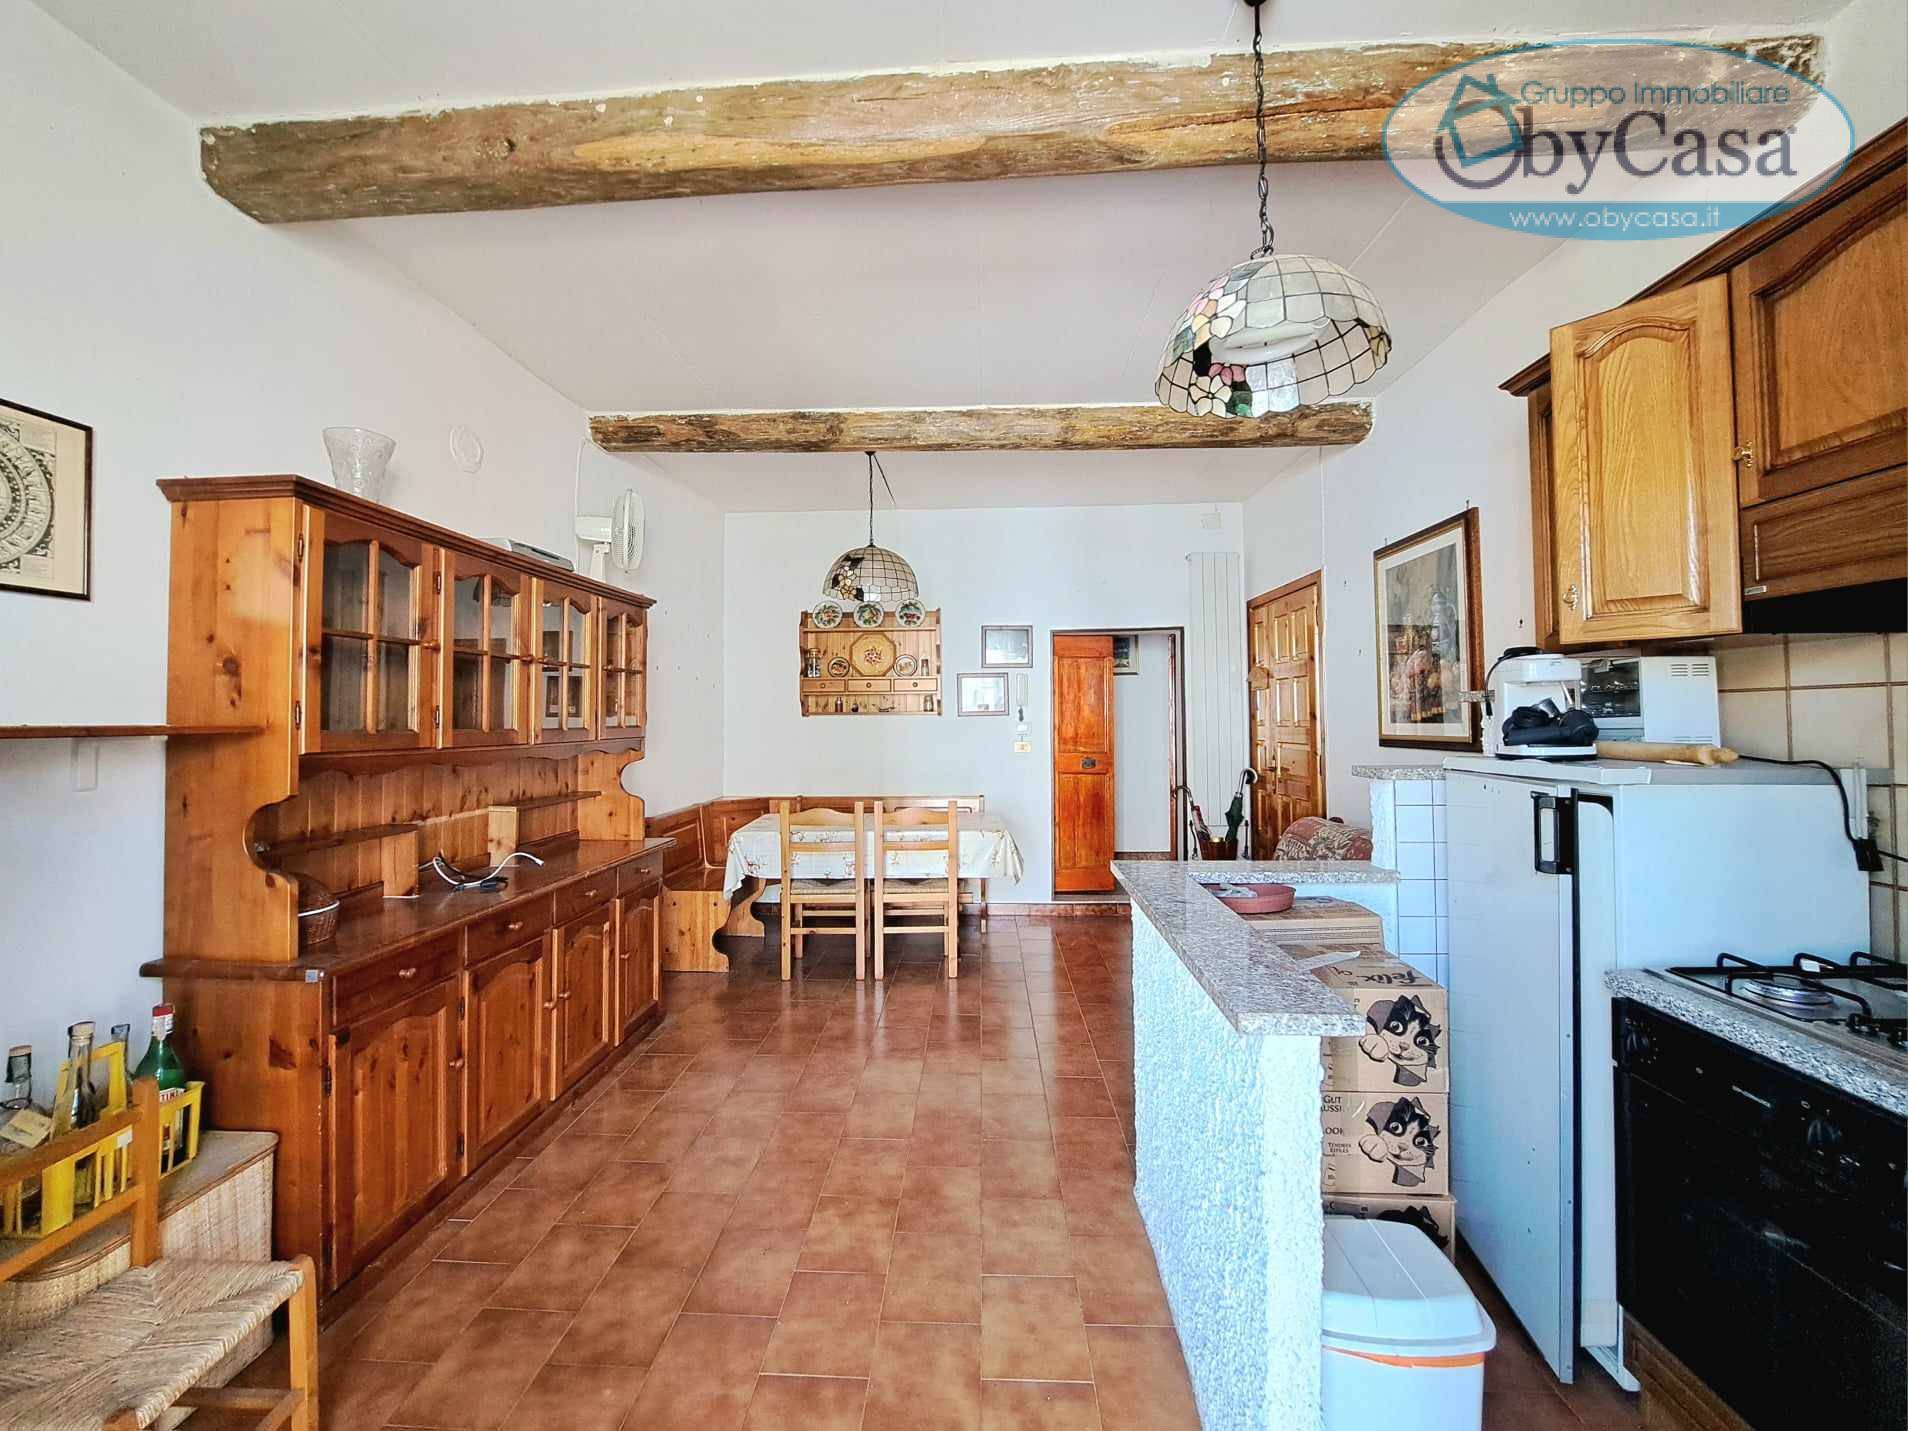 Appartamento in vendita a Vejano, 3 locali, zona Località: vejano, prezzo € 32.000 | PortaleAgenzieImmobiliari.it